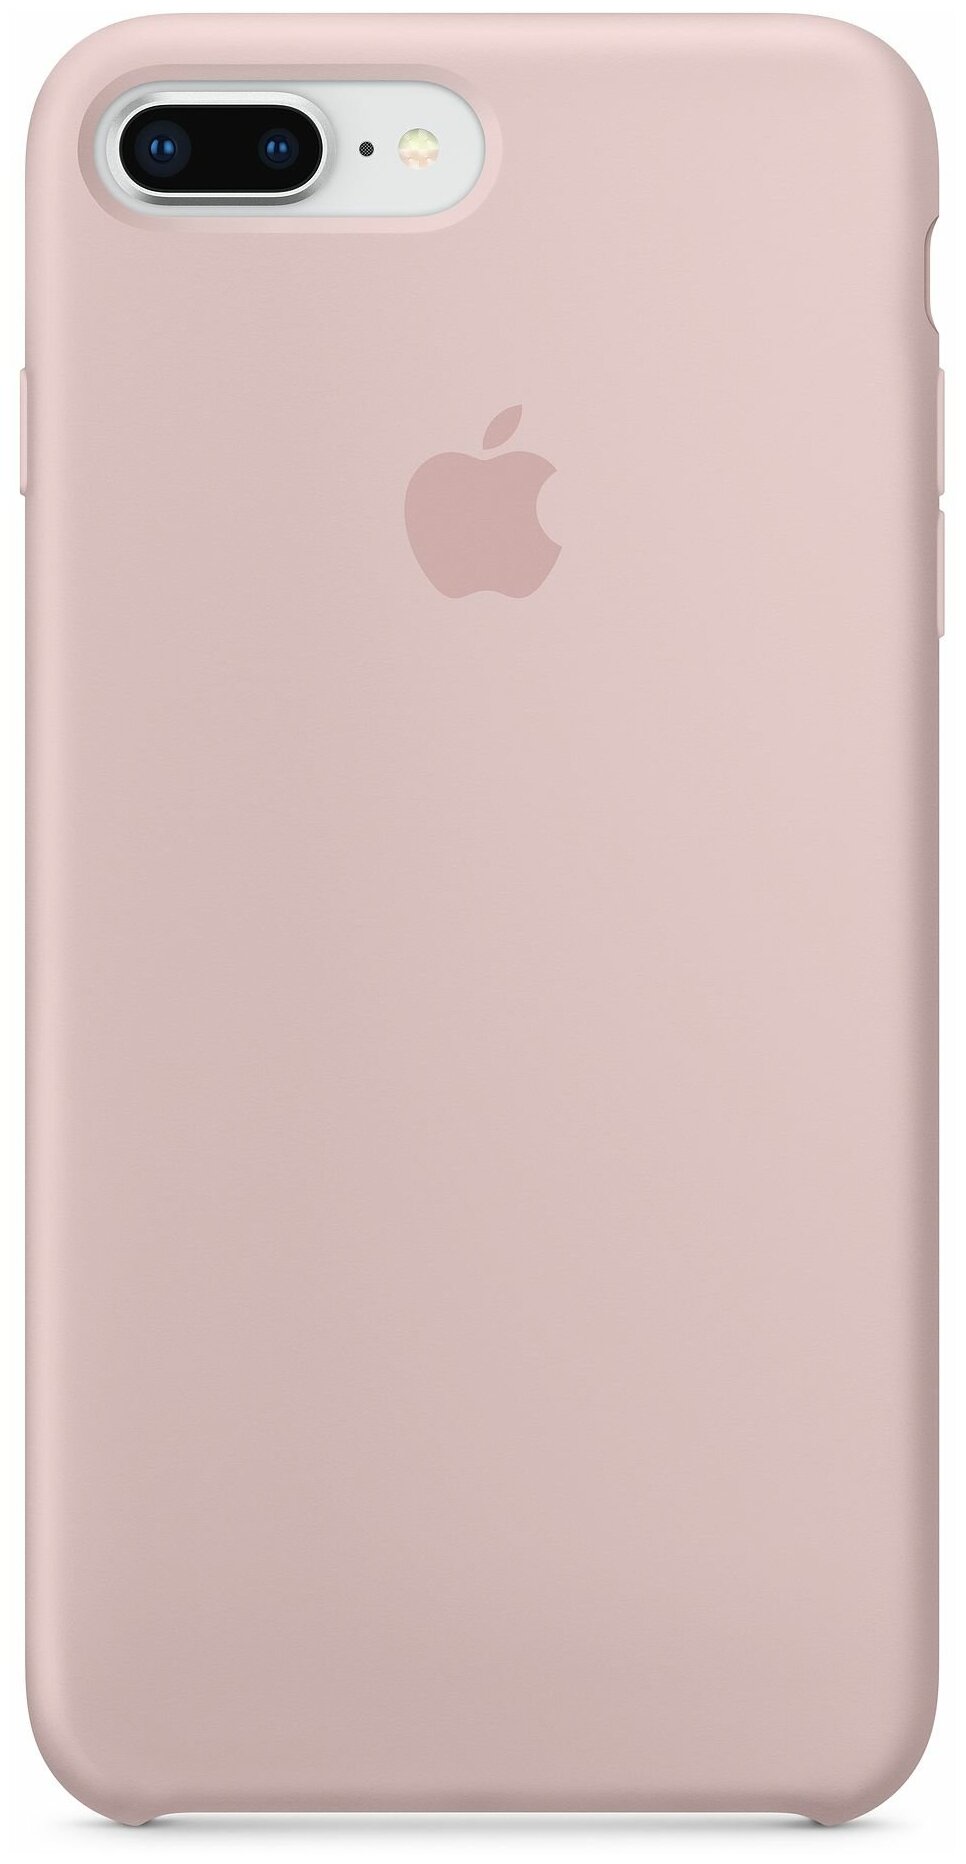 Чехол Apple силиконовый для iPhone 8 Plus / 7 Plus, pink sand